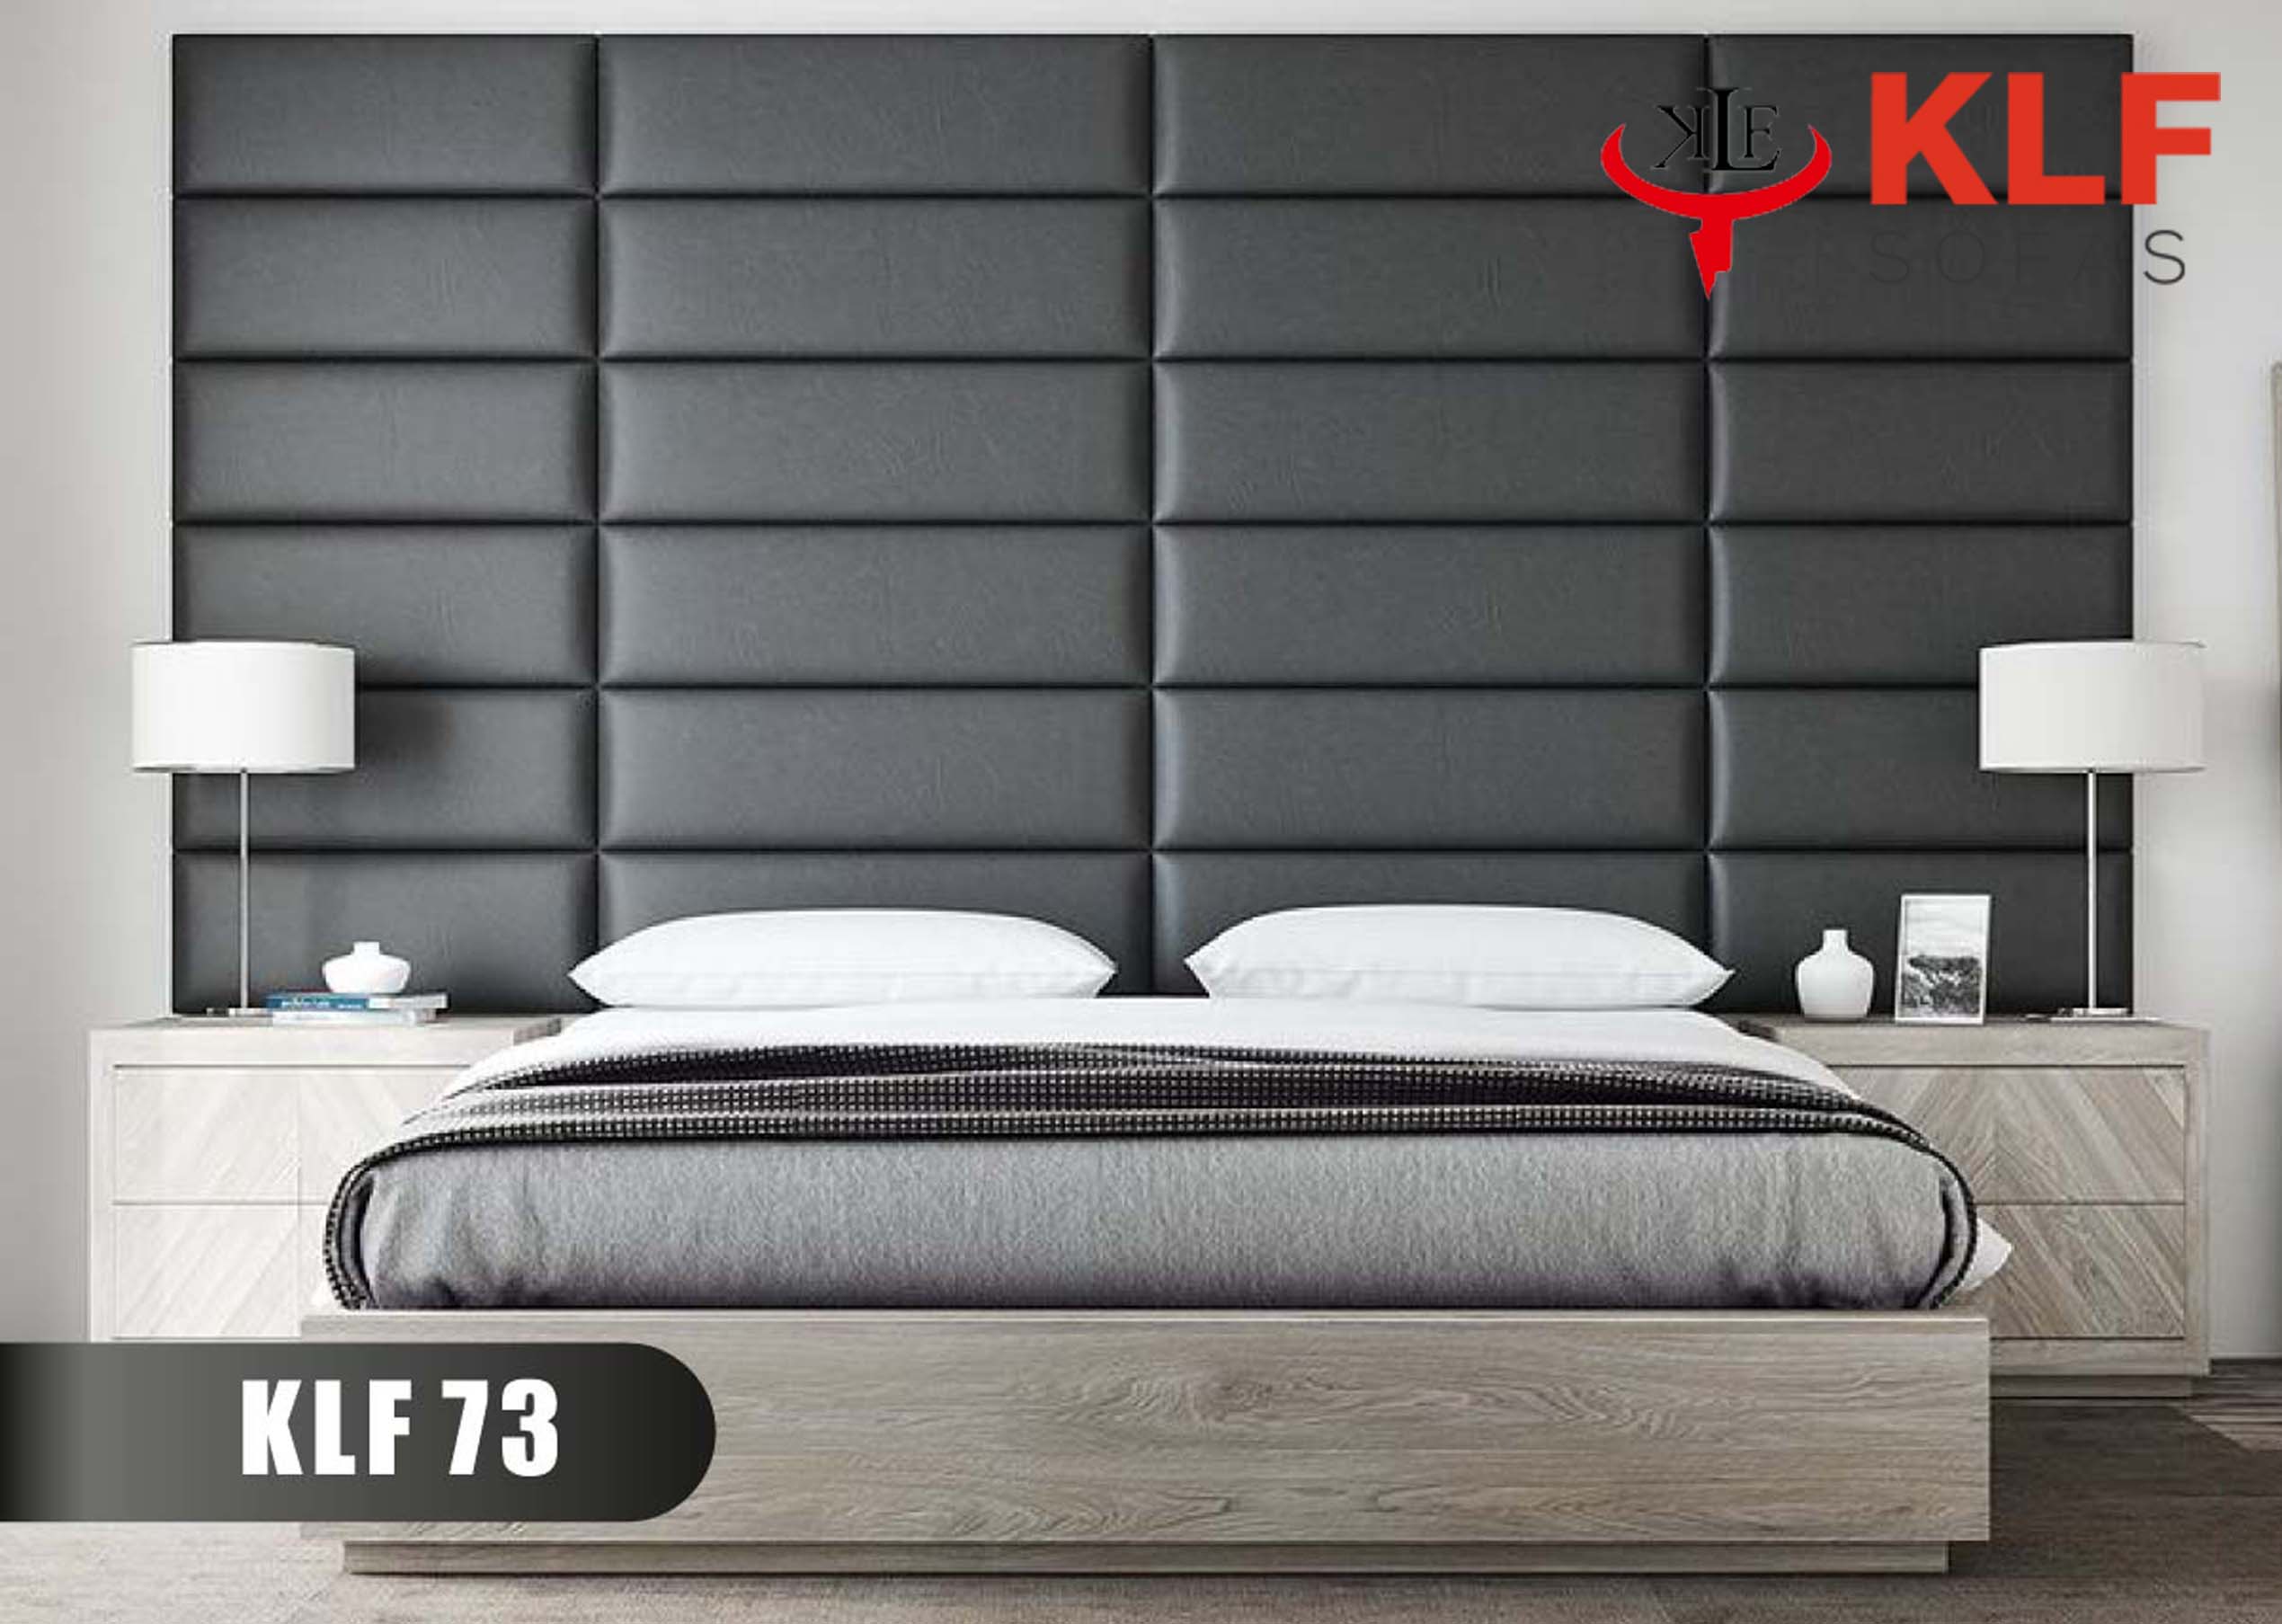 KLF Soft Beds